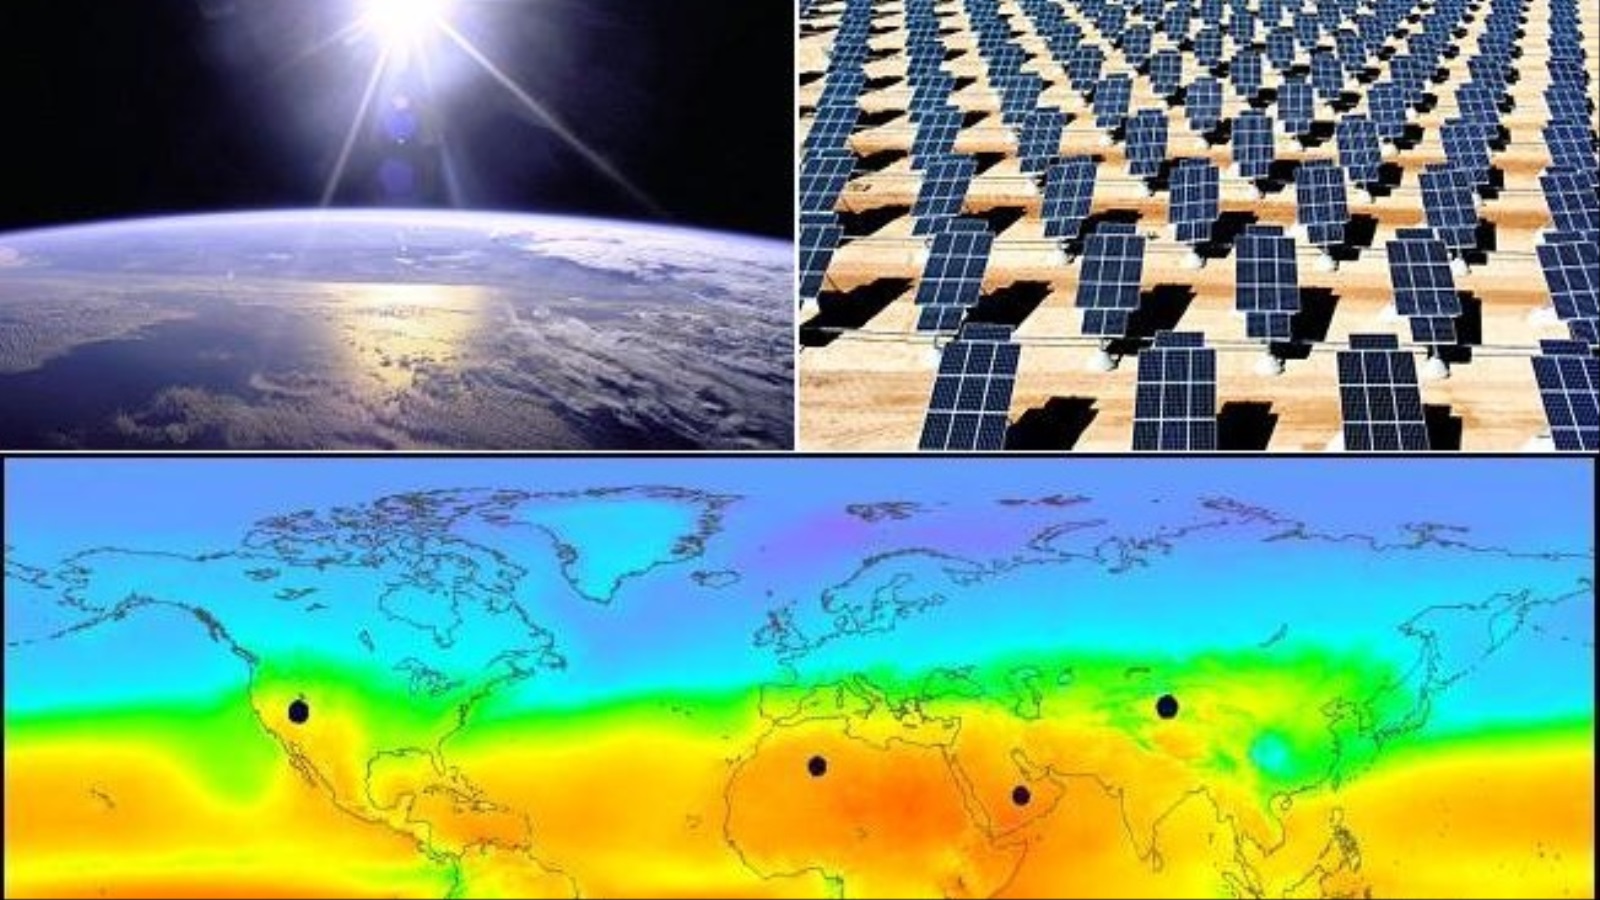 ‪‬ الطاقة الشمسية تواجه معضلة عدم انتظامها واستمراريتها طوال اليوم أو على مدار العامتواجه (ويكيميديا كومونز)